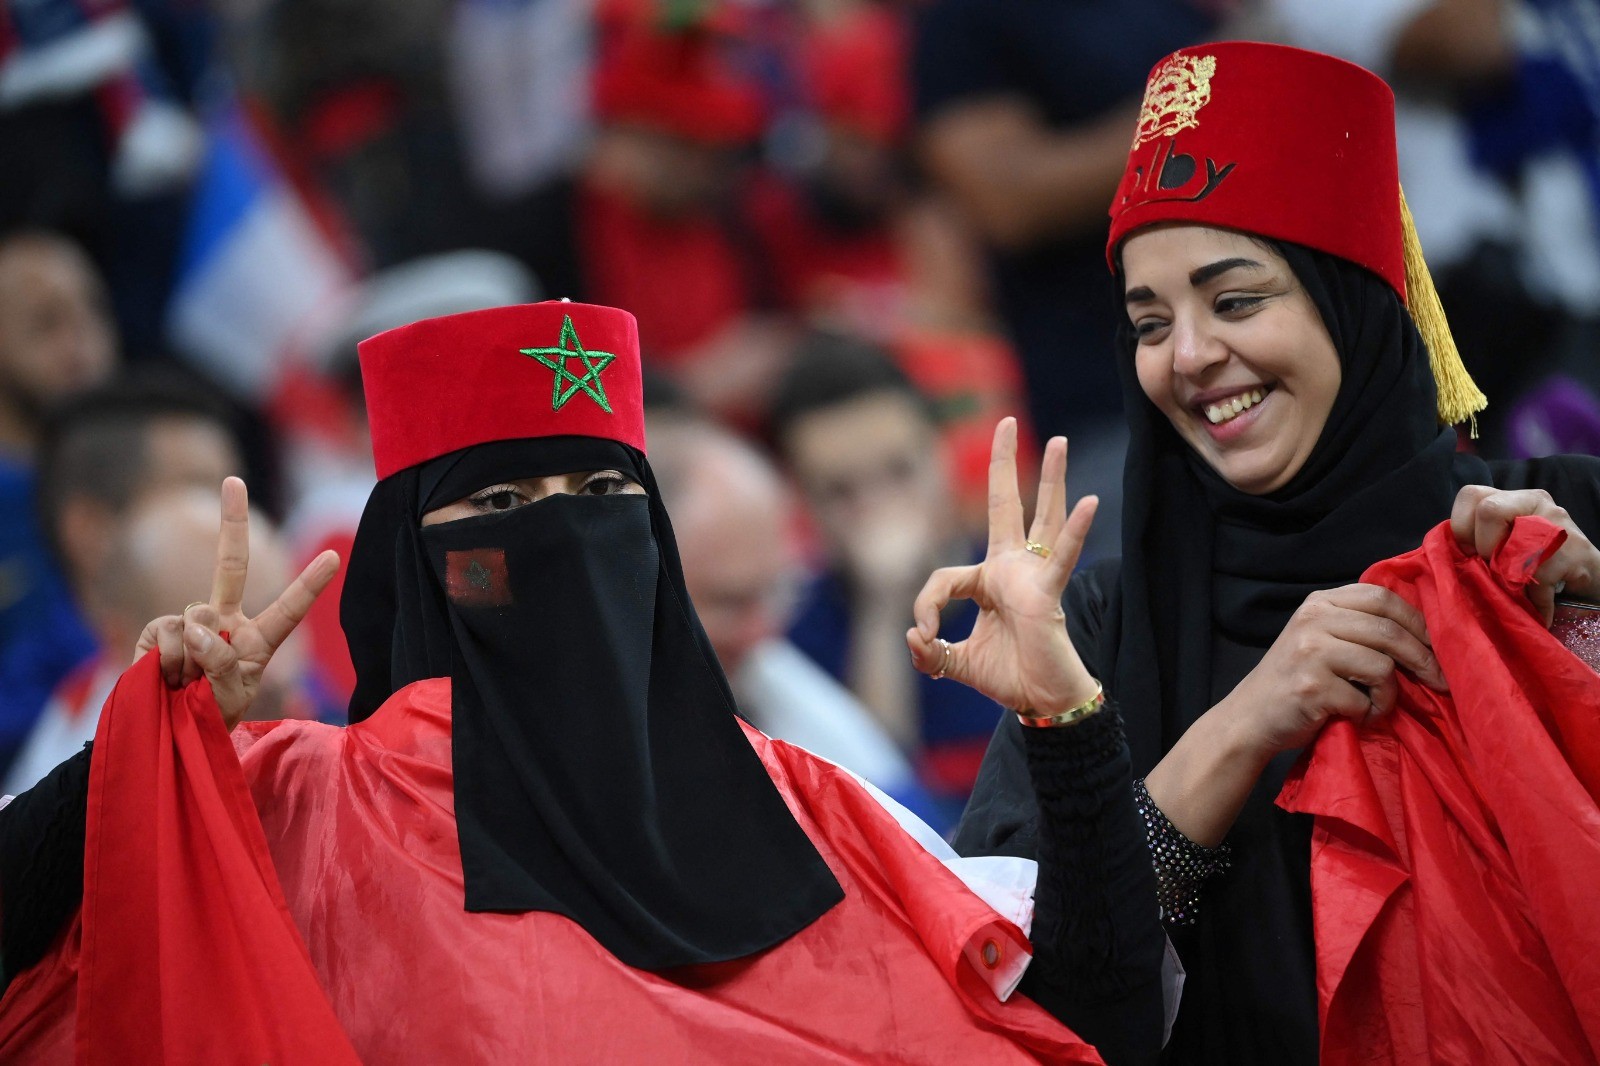 المغاربة يحتشدون في ملعب المباراة لتشجيع منتحبهم .. تصوير (الفرنسية) 32.jpg